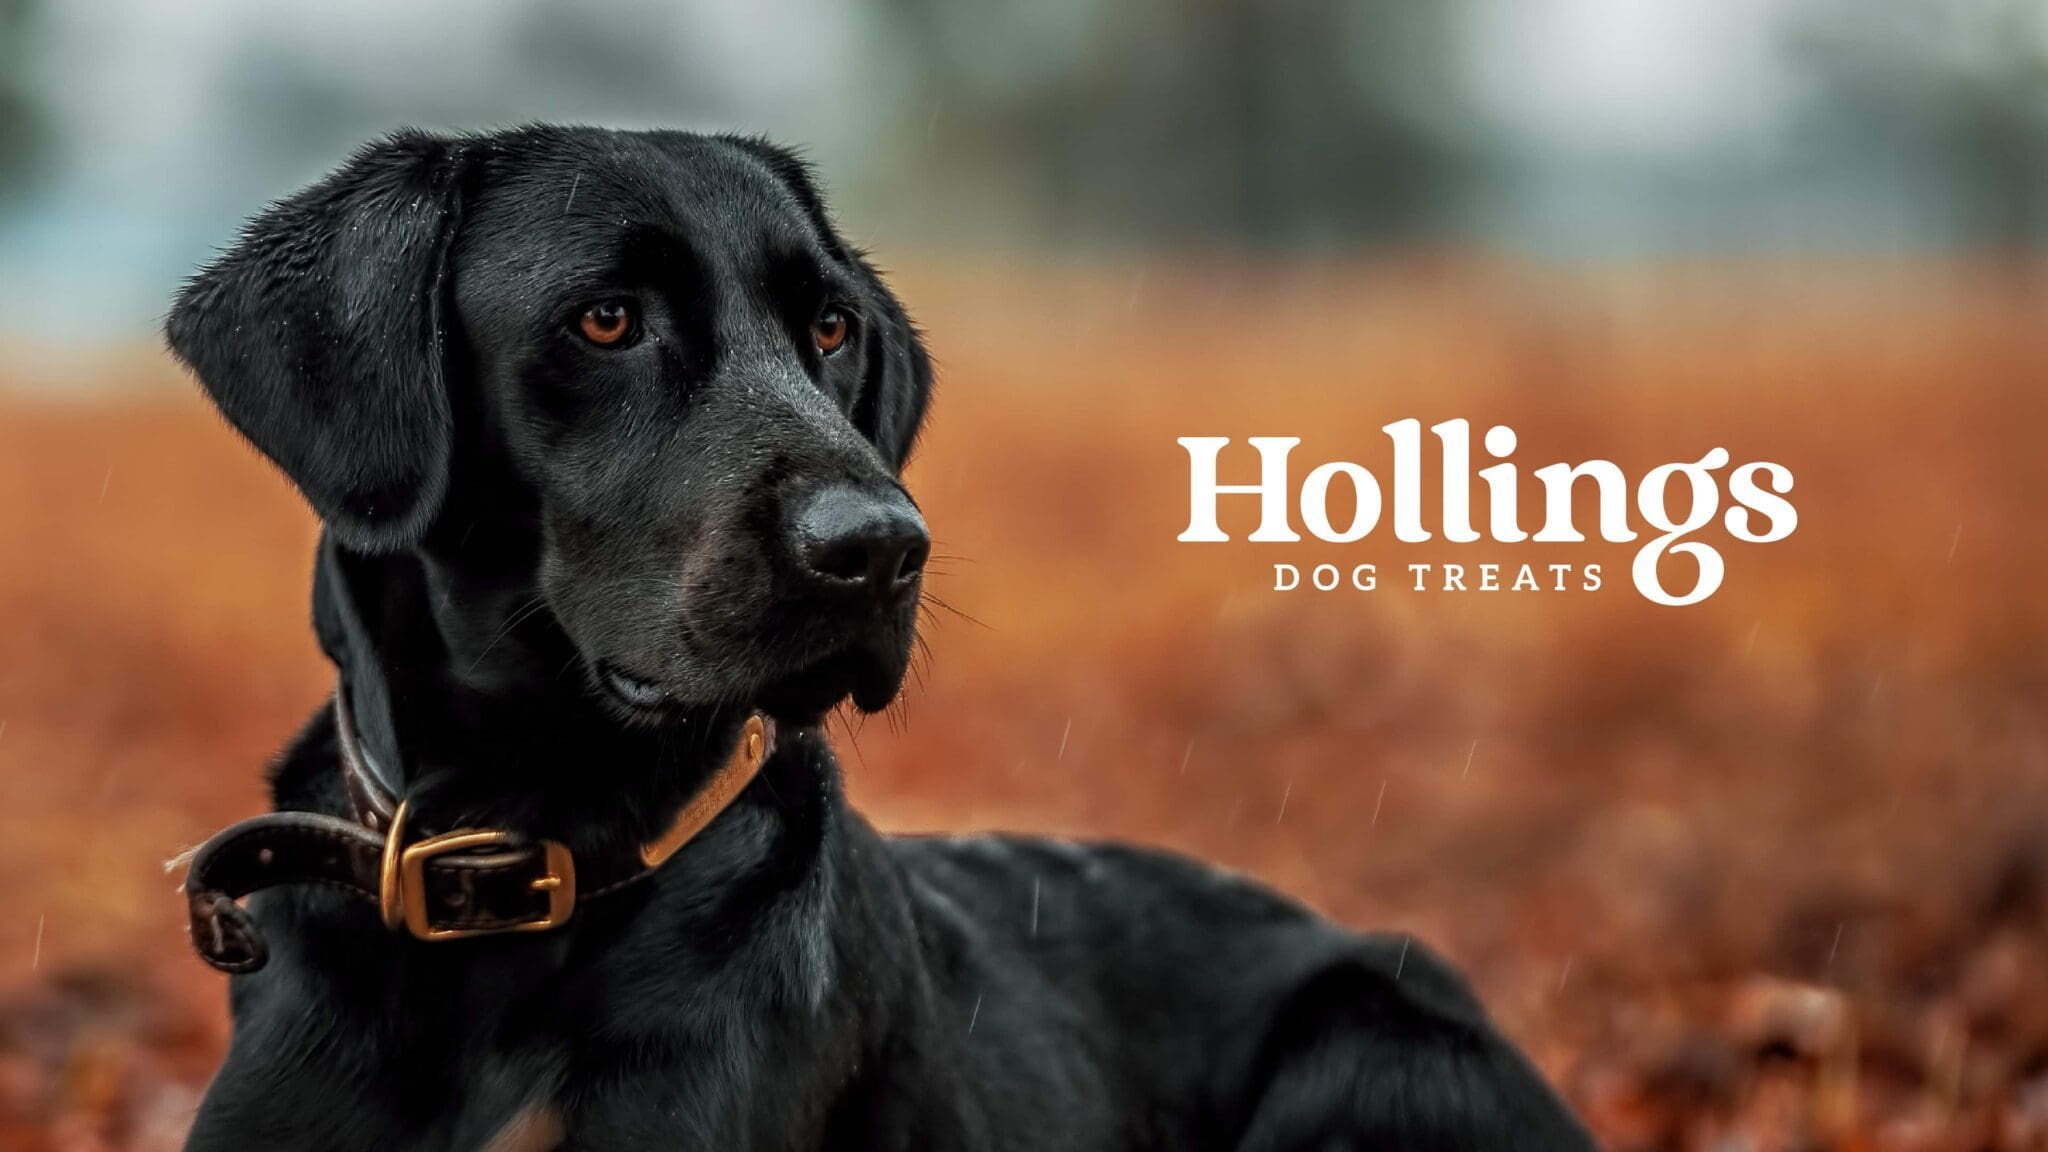 Hollings dog treats graphic design by Bluestone98 digital agency harrogate